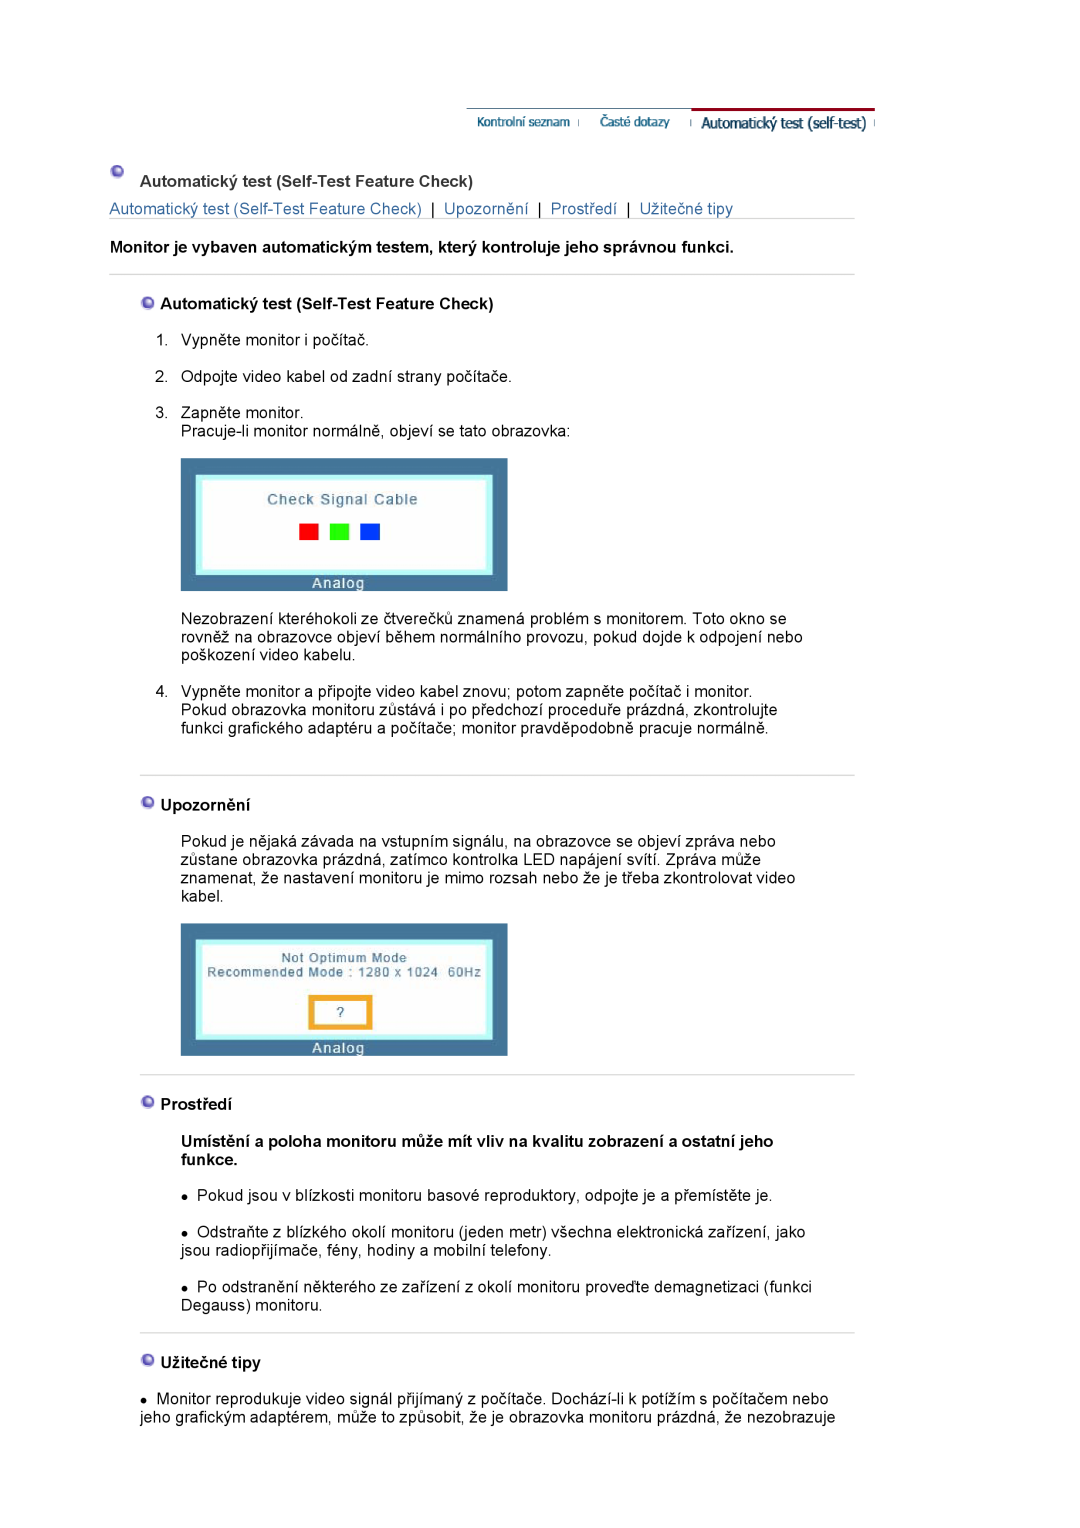 Samsung MJ19ASAS/EDC, MJ17ASKN/EDC manual Automatický test Self-Test Feature Check, Upozornění, Prostředí, Užitečné tipy 